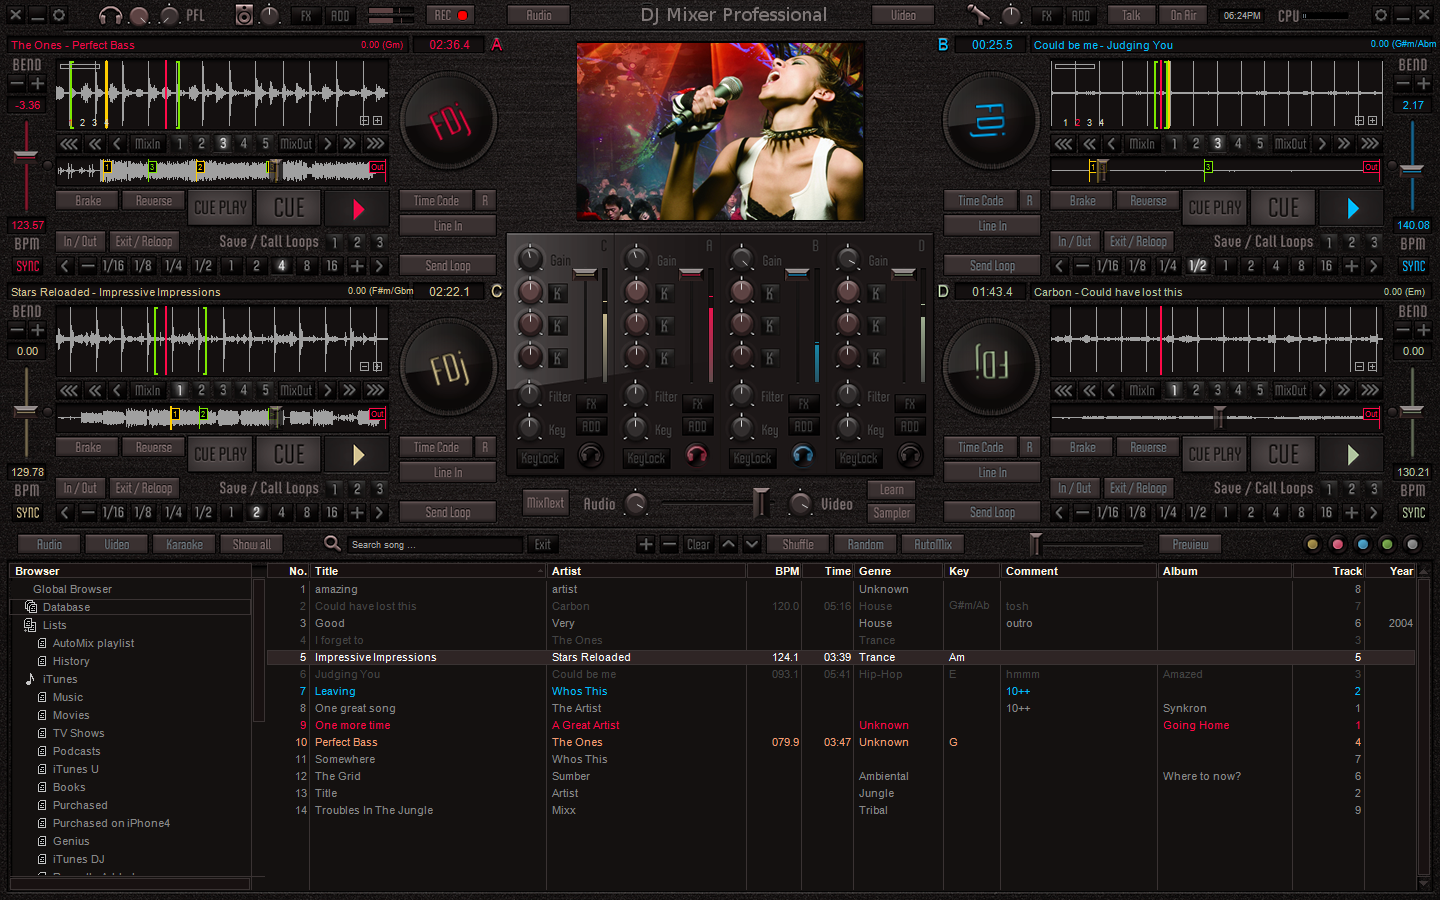 DJ Mixer 3 Professional for Mac